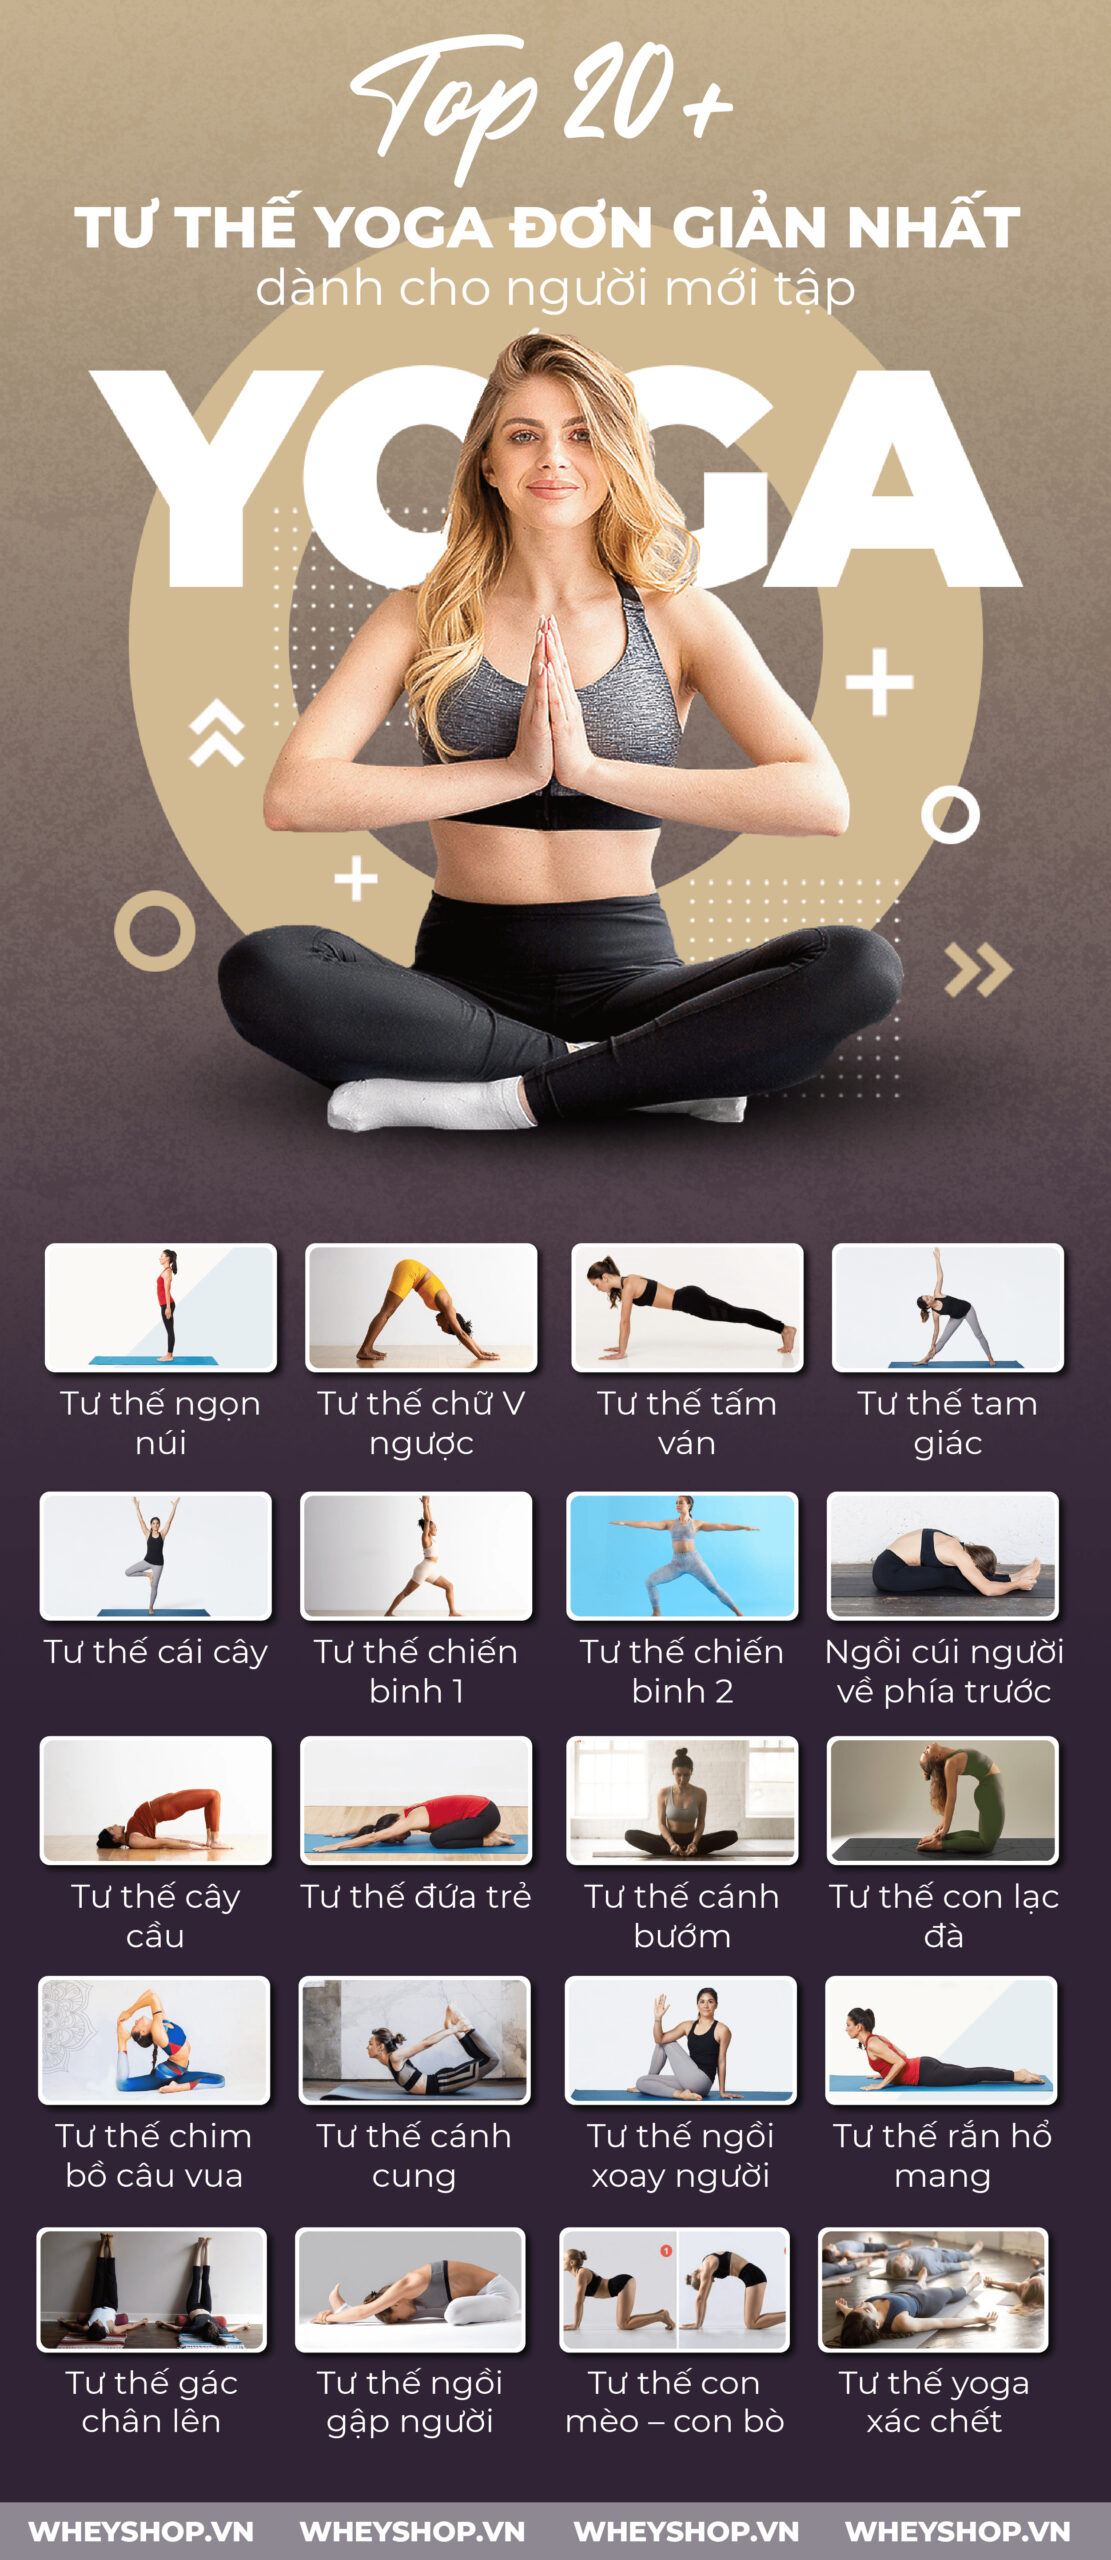 20+ tư thế yoga đơn giản nhất dành cho người mới tập sau đây chắc chắn sẽ giúp sức khoẻ của bạn thay đổi đáng kể. Cùng WheyShop tìm hiểu 